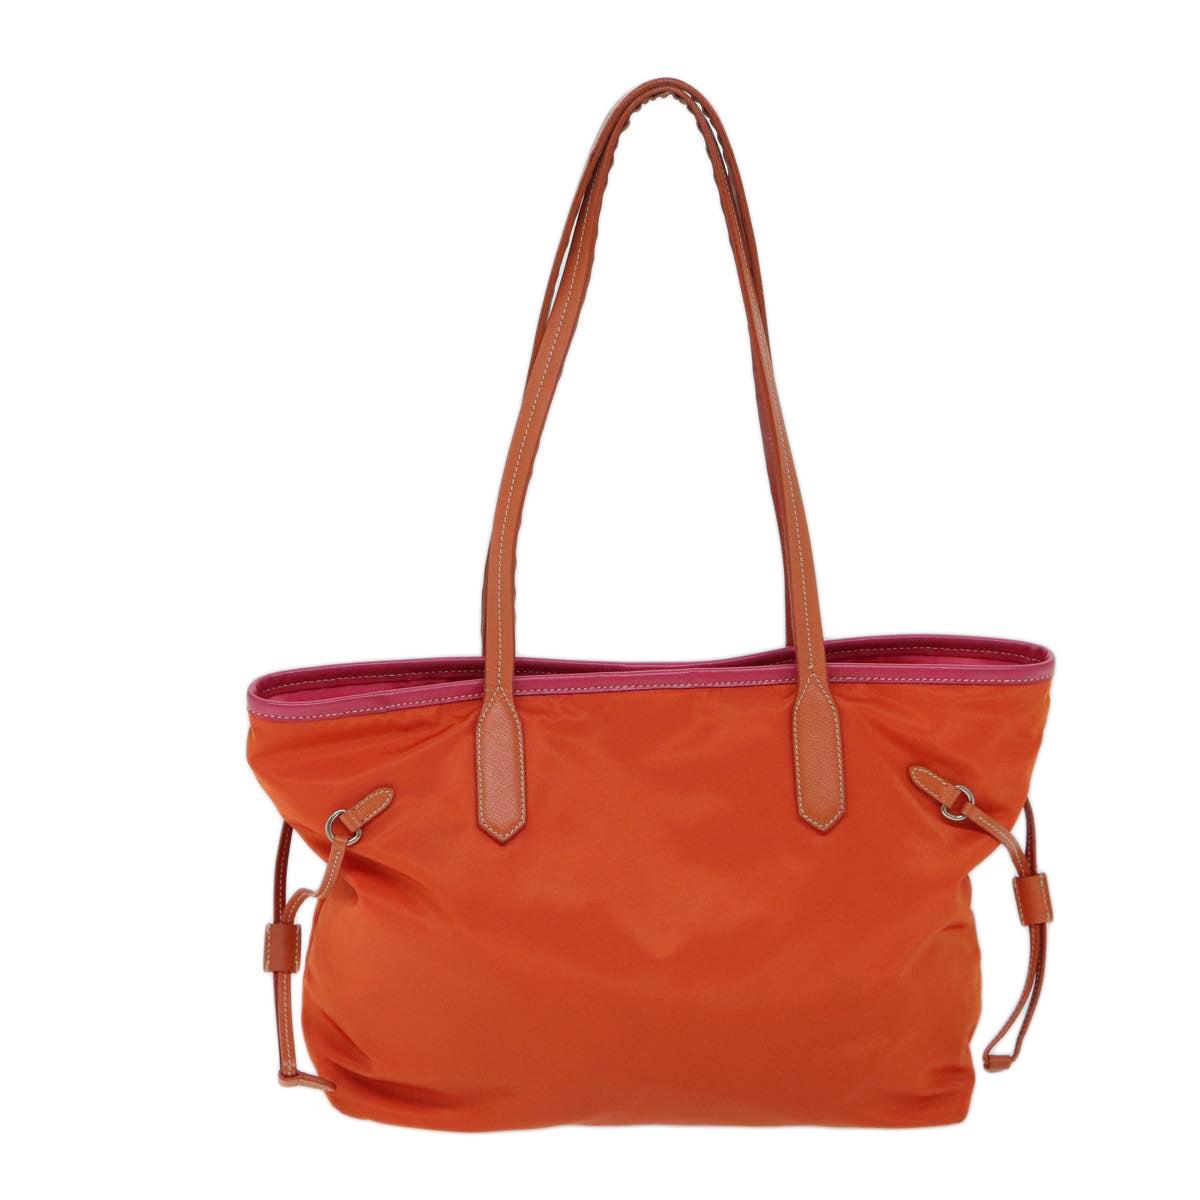 PRADA Tote Bag Nylon Orange Auth 72024